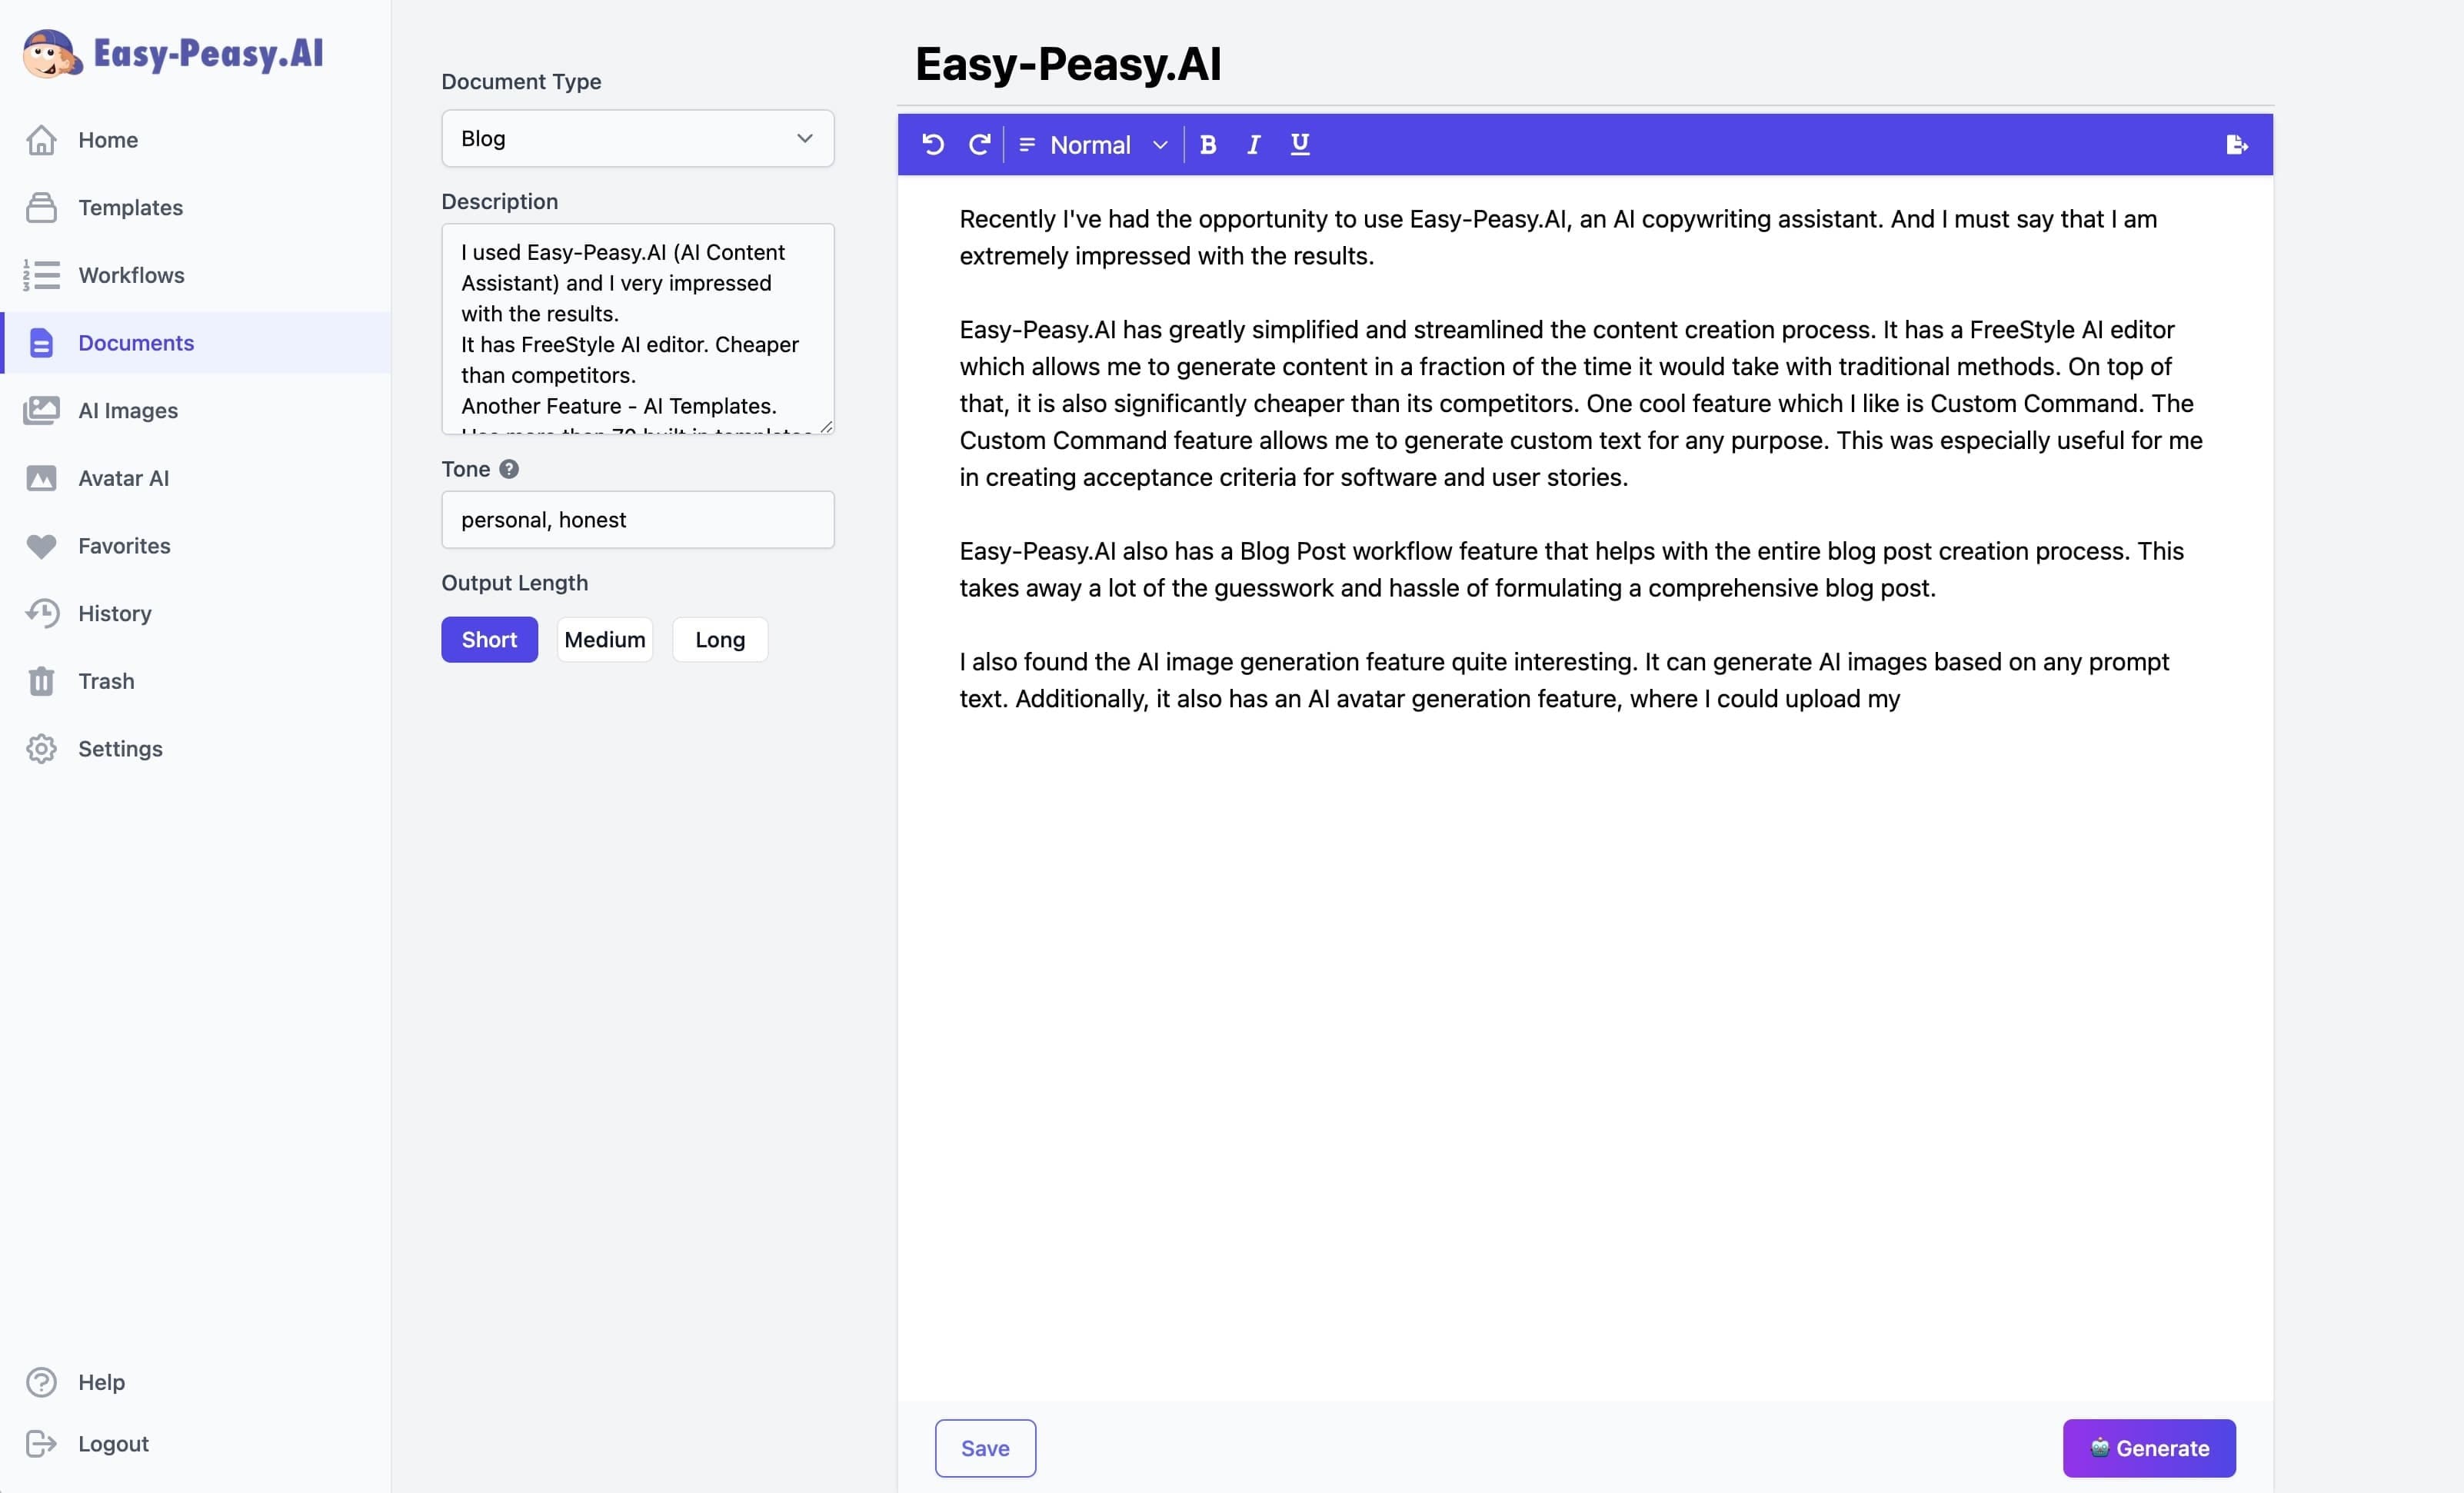 interface de usuário do easy-peasy.ai